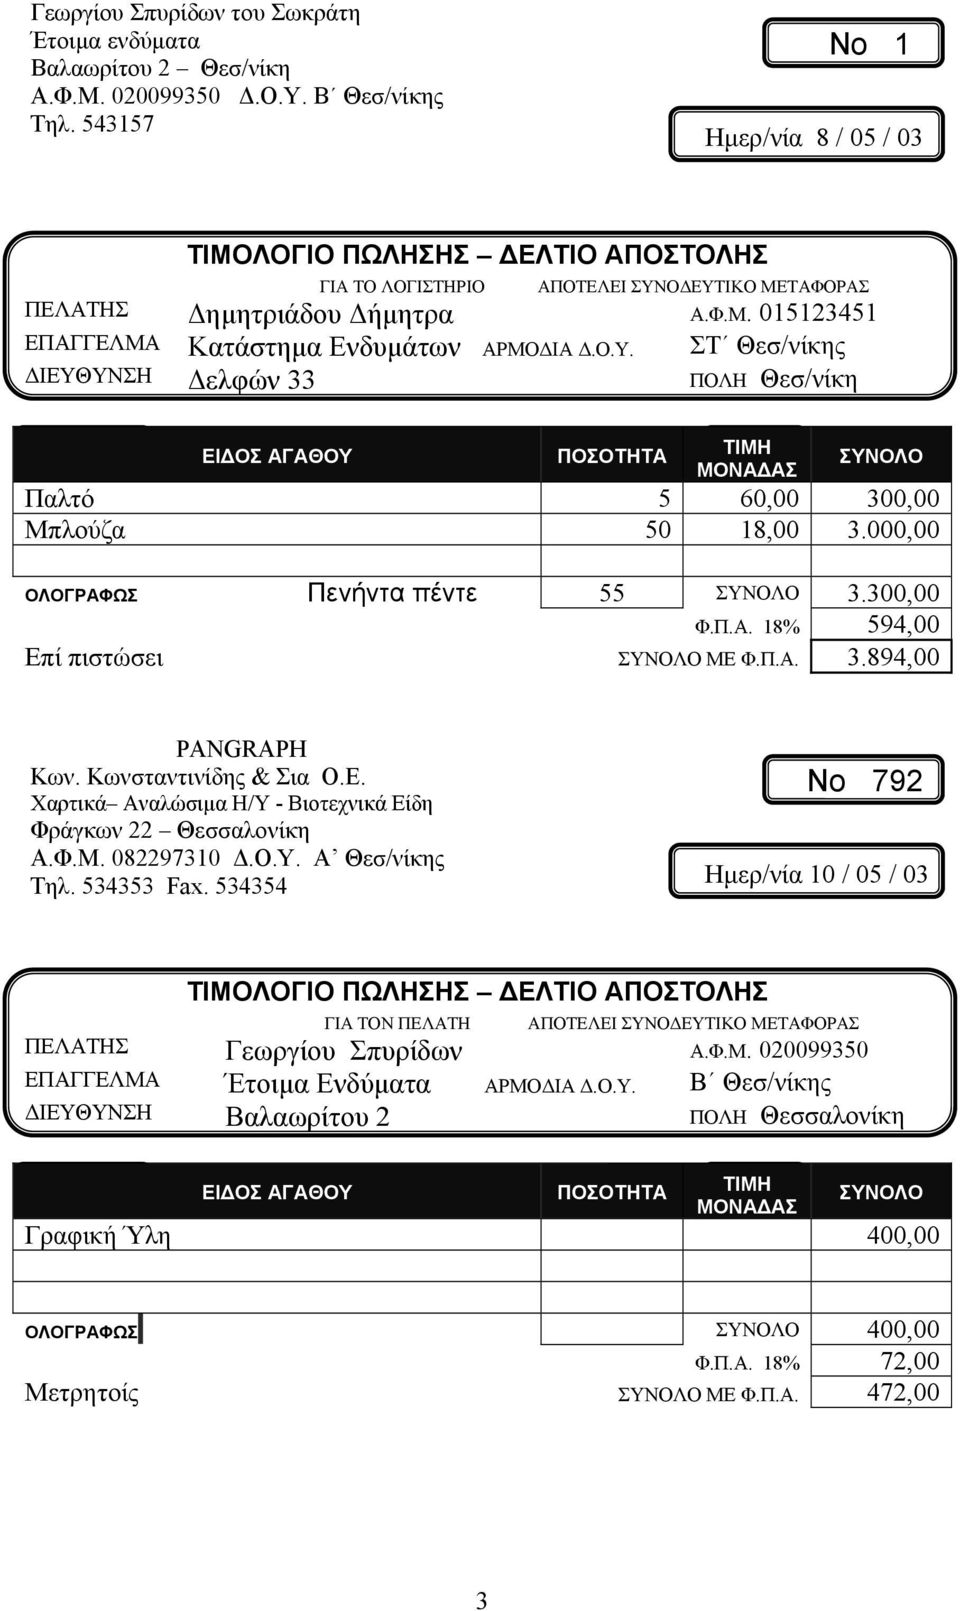 Κωνσταντινίδης & Σια Ο.Ε. Χαρτικά Αναλώσιμα Η/Υ - Βιοτεχνικά Είδη Φράγκων 22 Θεσσαλονίκη Α.Φ.Μ. 082297310 Δ.Ο.Υ. Α Θεσ/νίκης Τηλ. 534353 Fax.